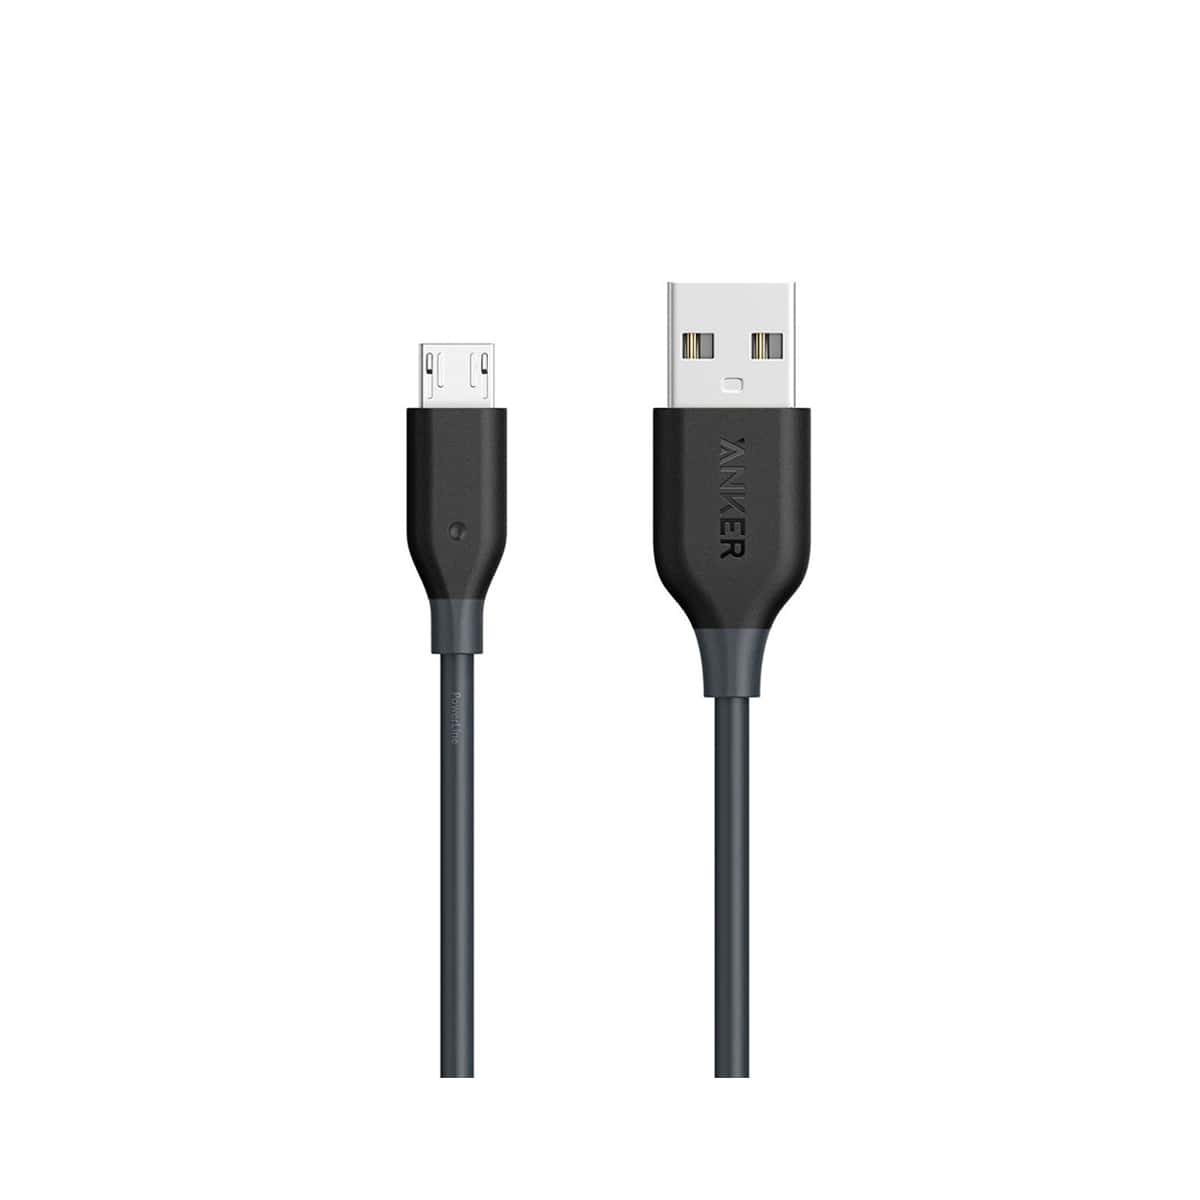 کابل تبدیل USB به Micro-USB انکر مدل PowerLine طول 1.8 متر